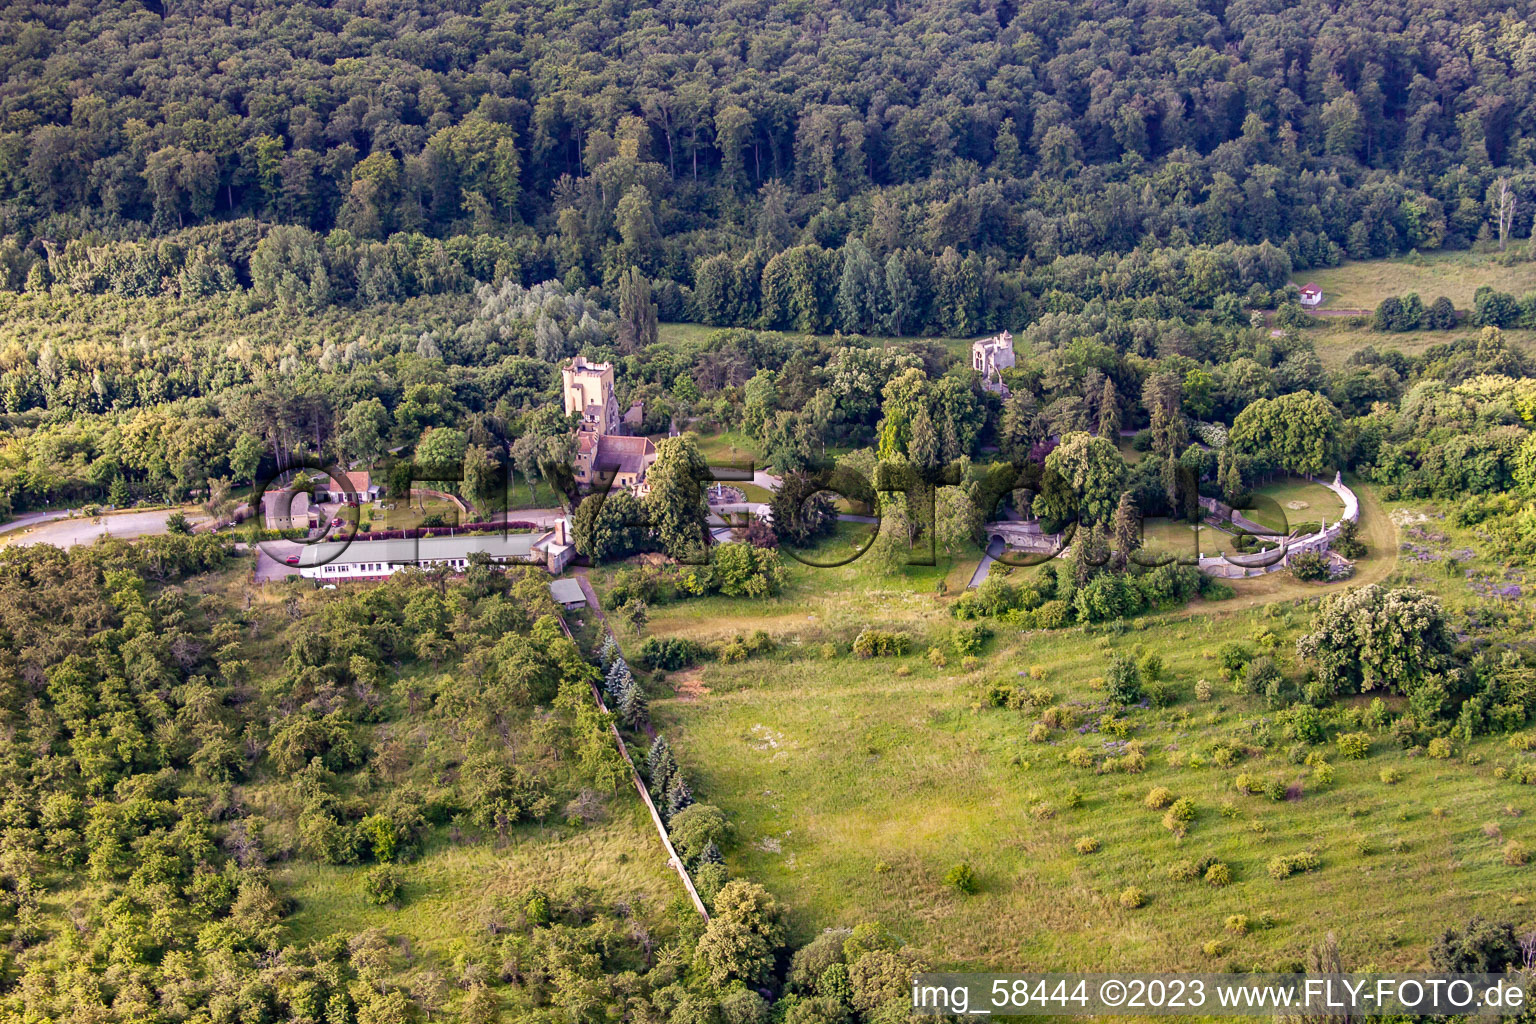 Photographie aérienne de Parc Roseburg à le quartier Rieder in Ballenstedt dans le département Saxe-Anhalt, Allemagne